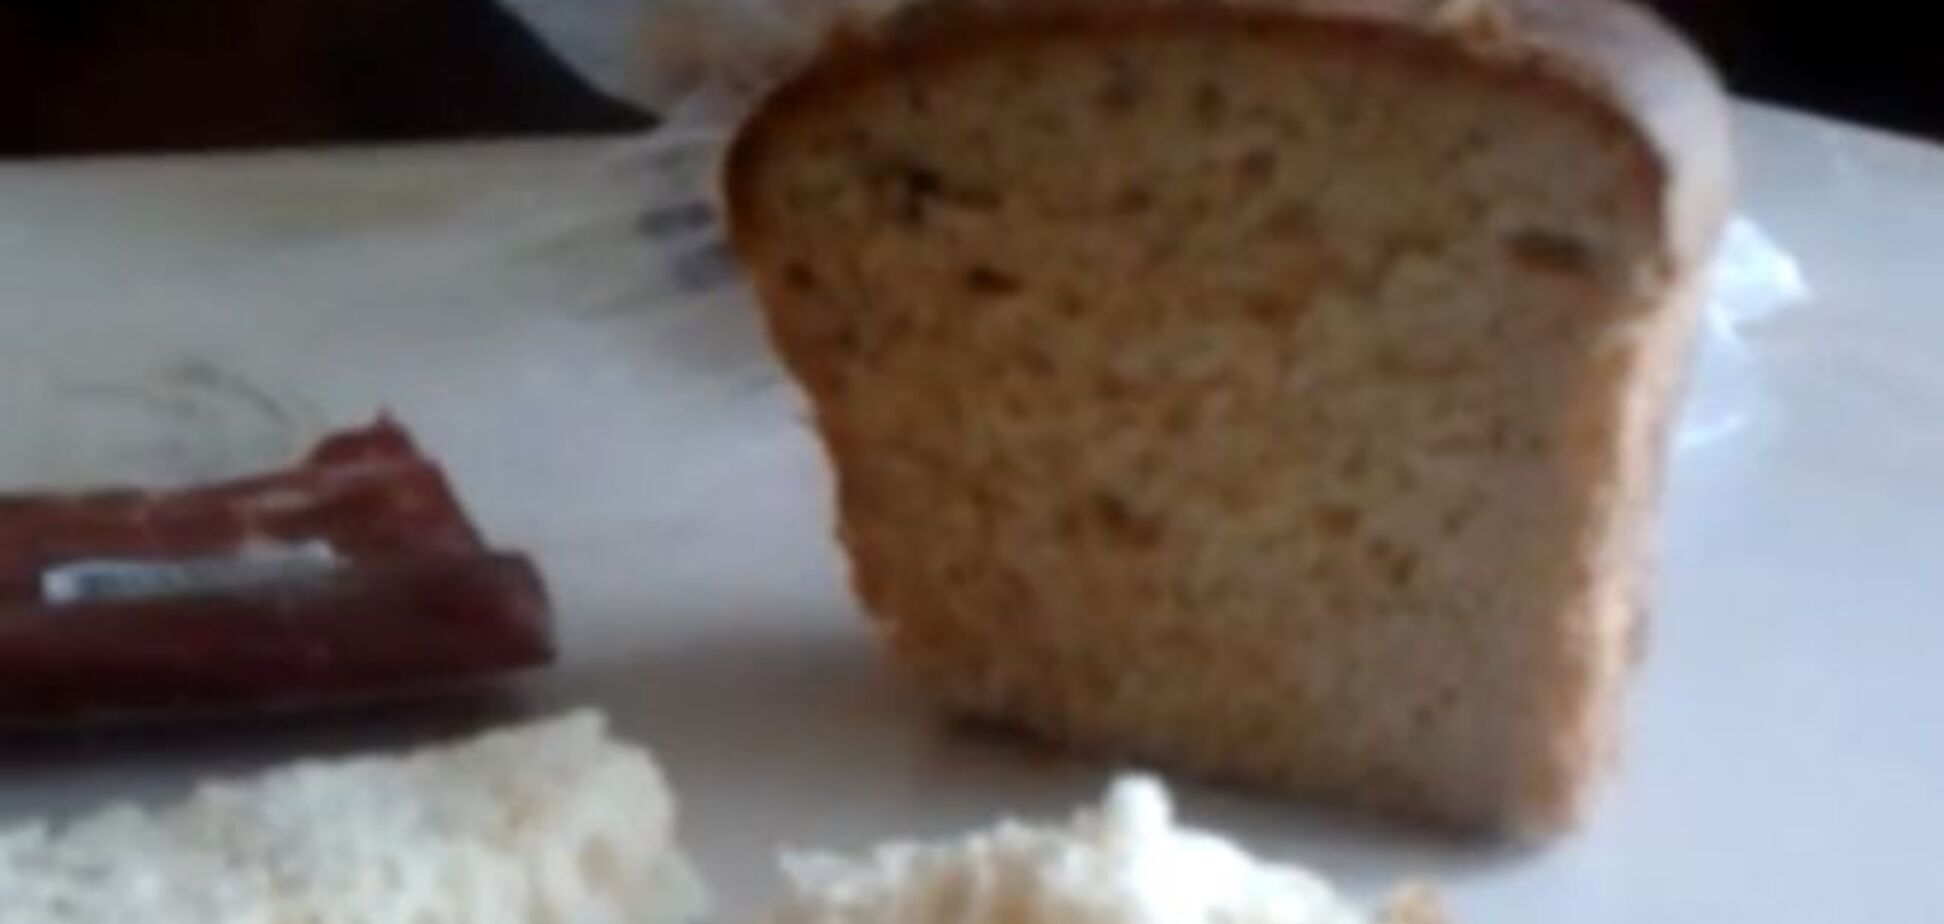 Сюрприз! В столичном хлебе обнаружили жуткую 'начинку': видеофакт